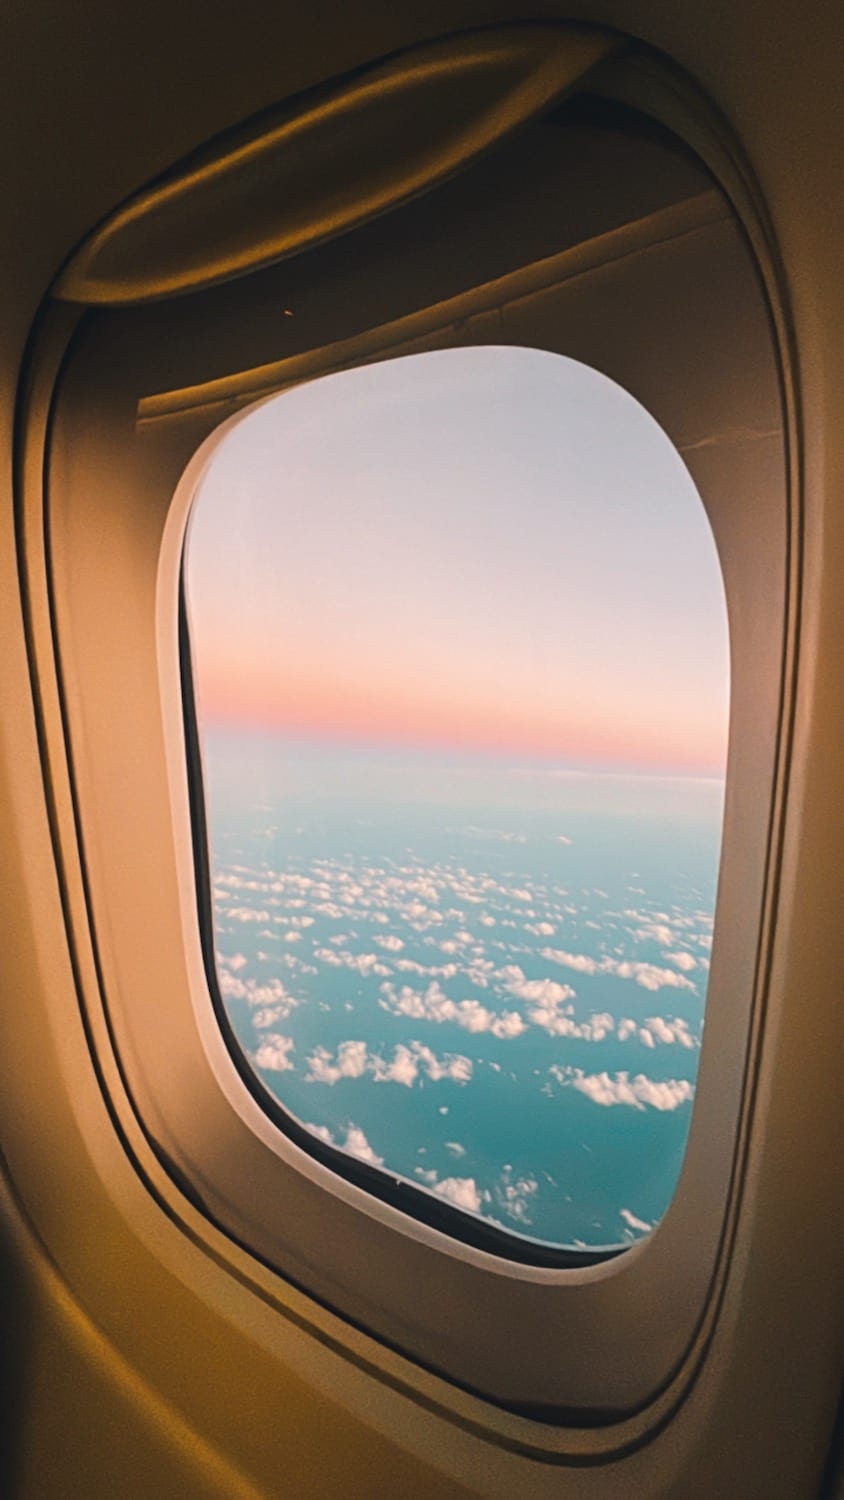 Plane window overlooking clouds